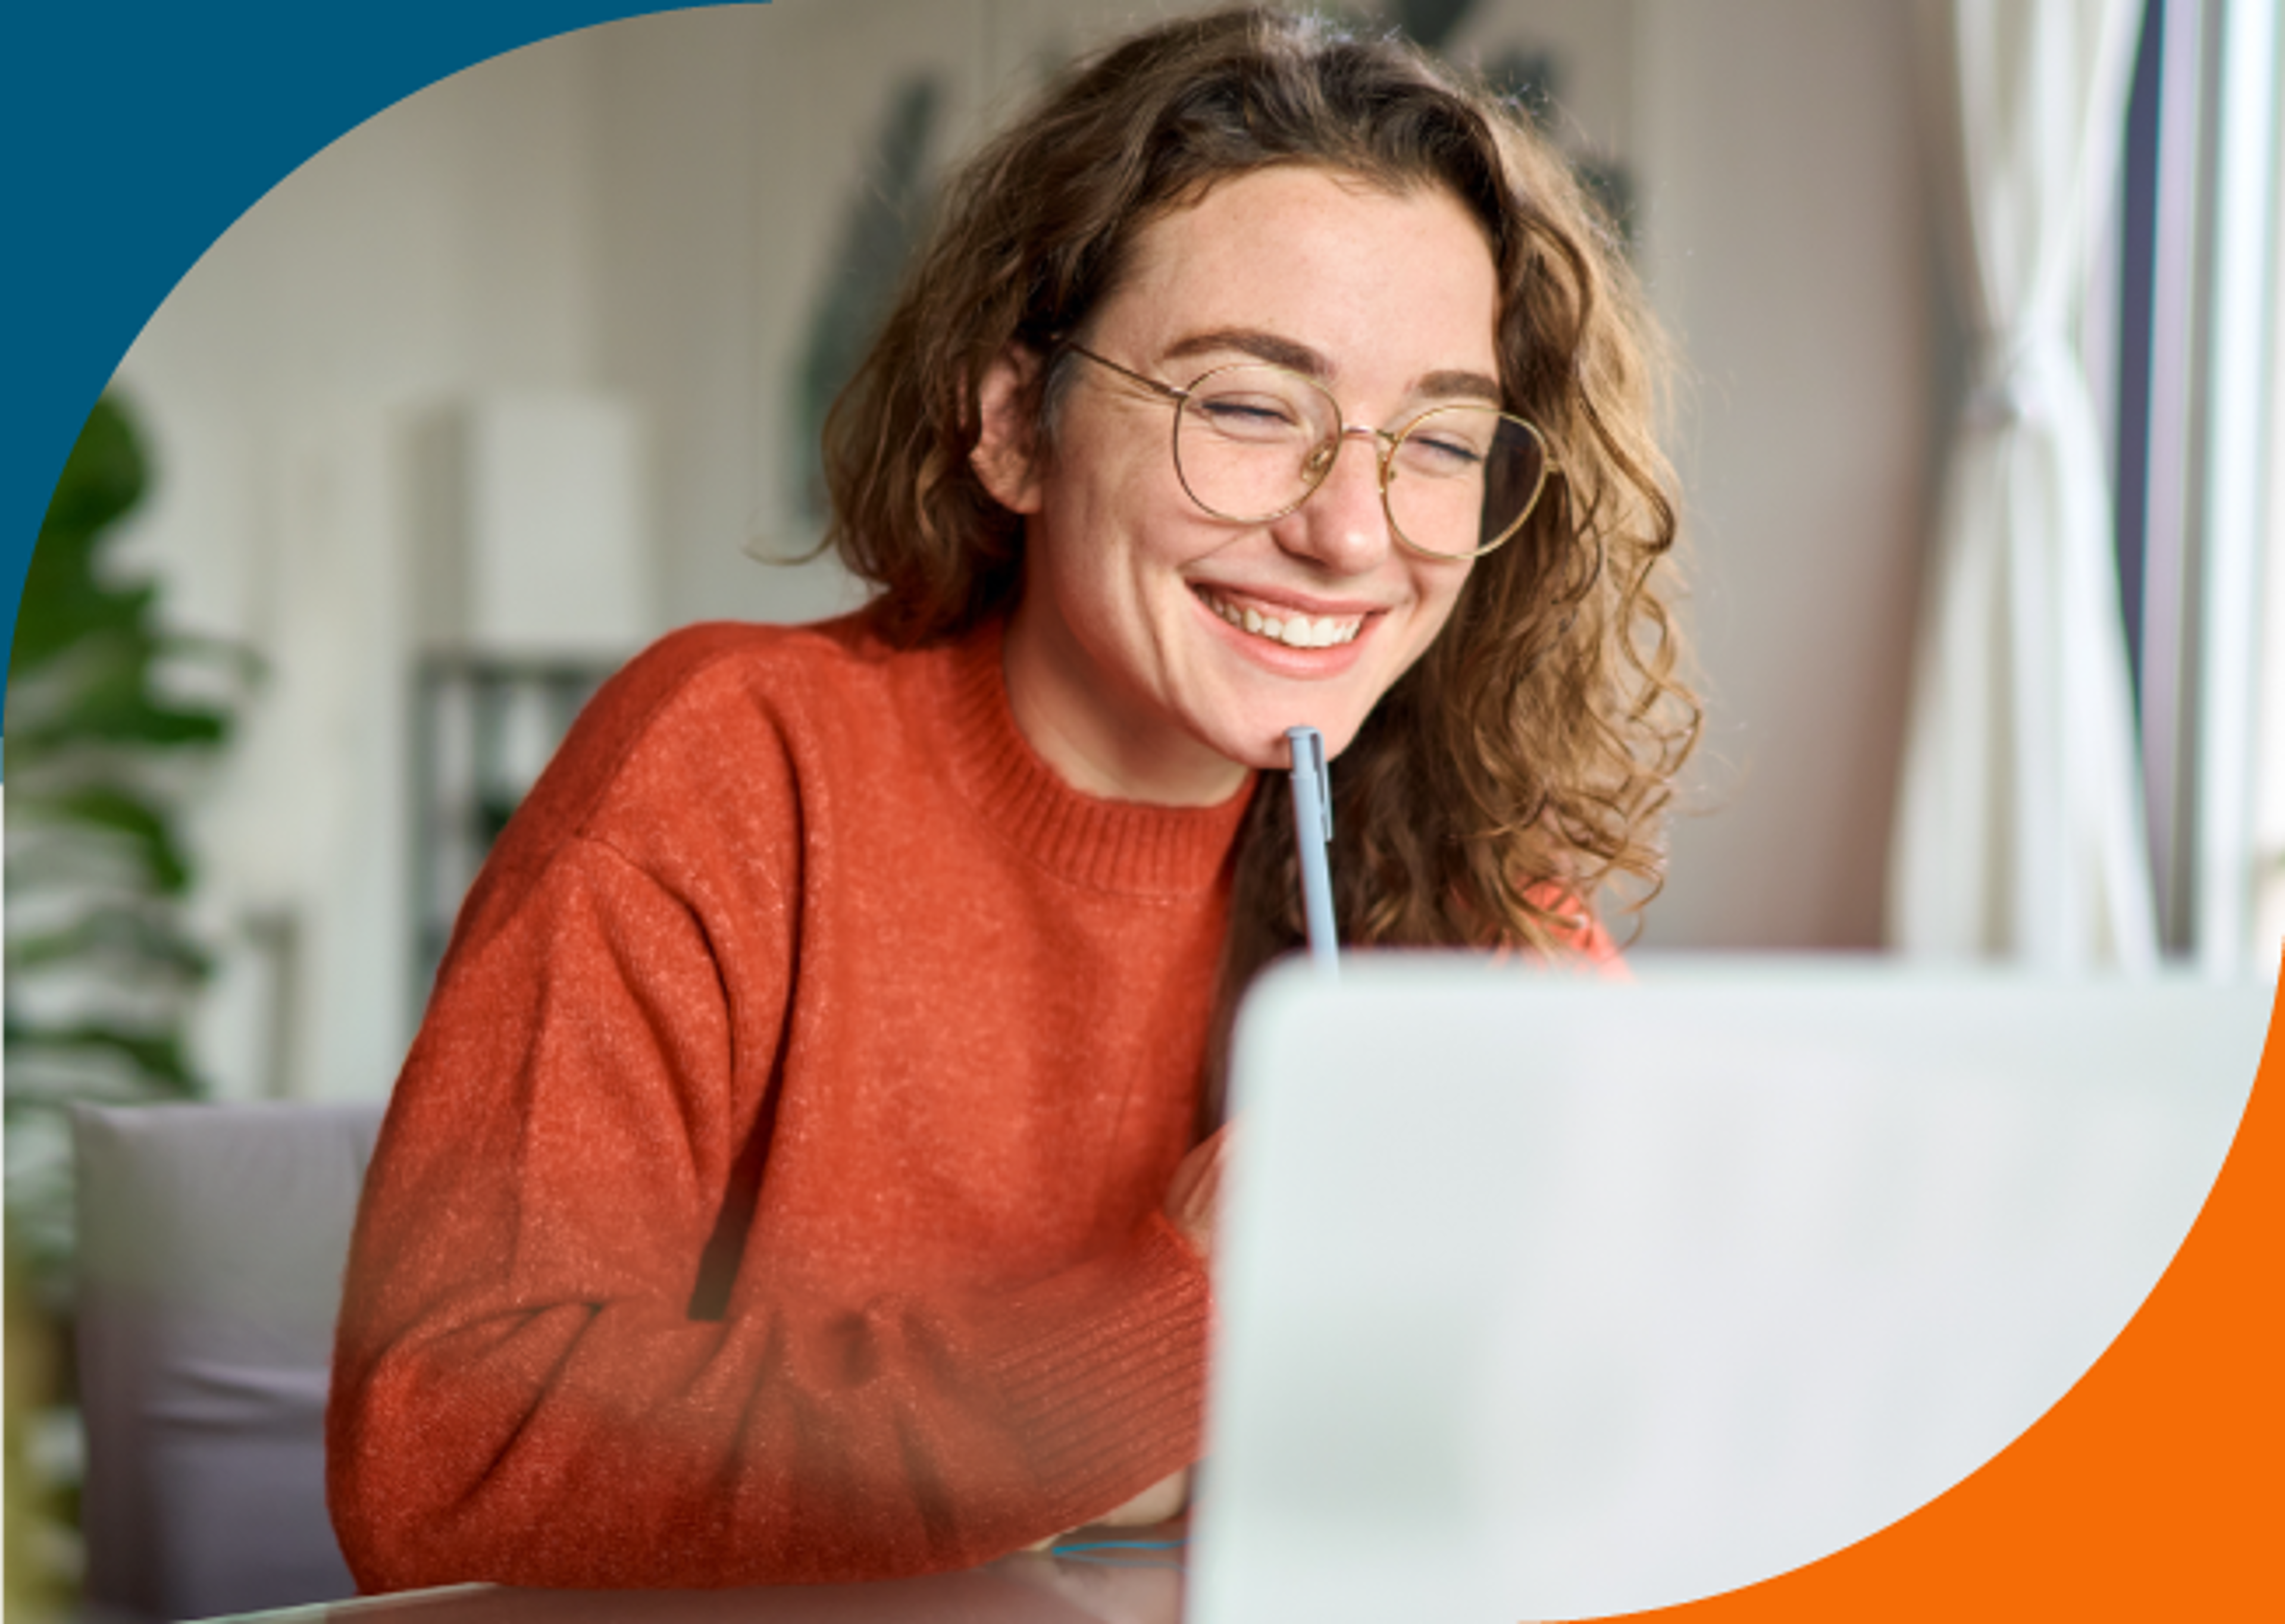 Una dona alegre amb ulleres treballant en el seu portàtil, mostrant compromís i un somriure agradable.